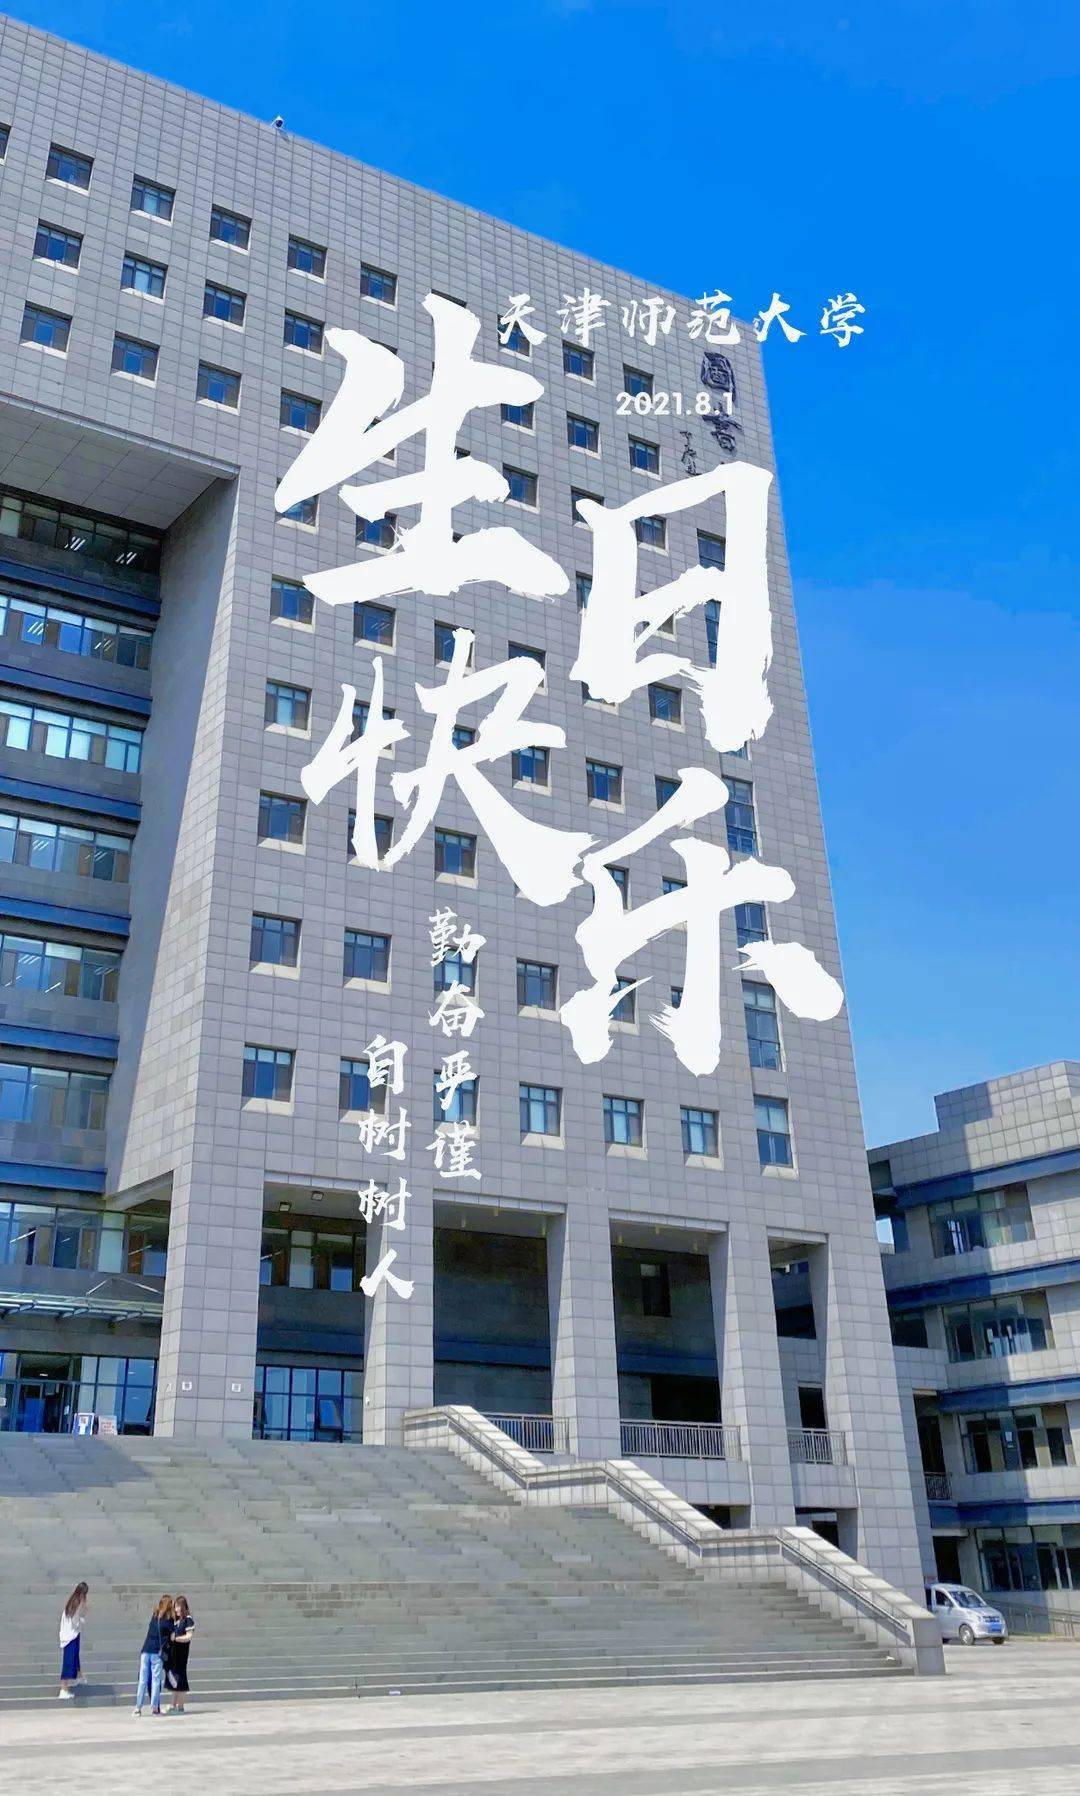 天津师范大学壁纸励志图片